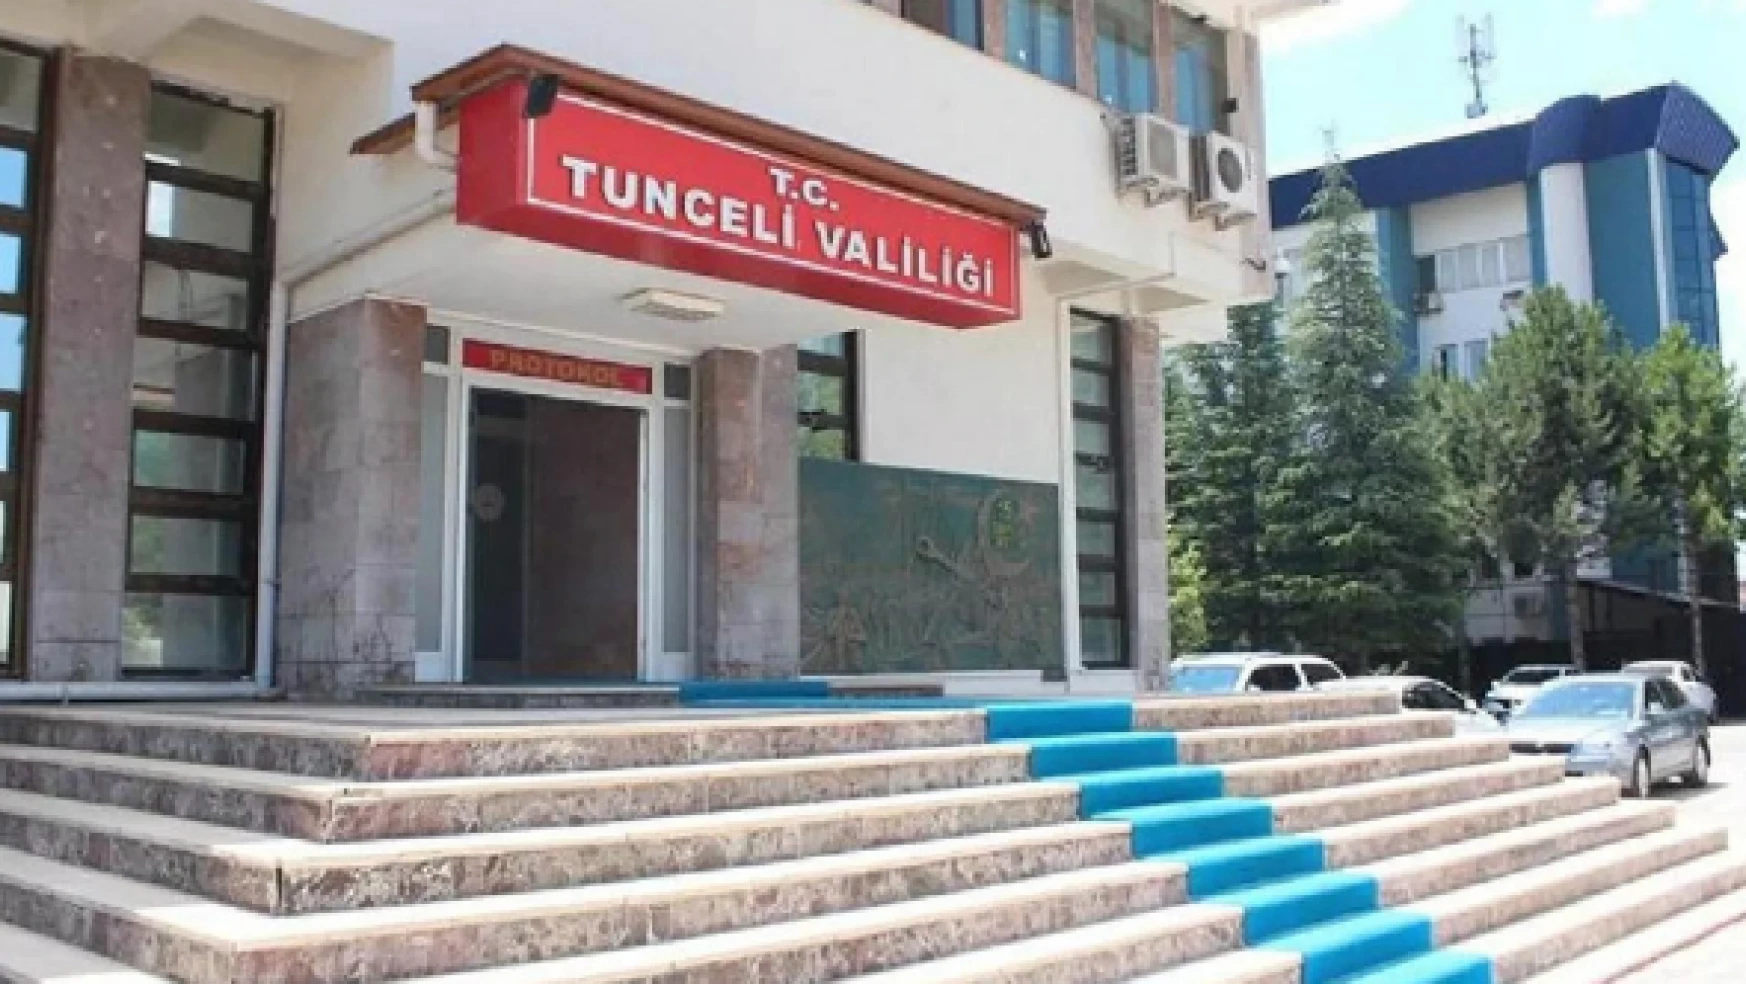  Tunceli'de 4 bölge özel güvenlik bölgesi ilan edildi!